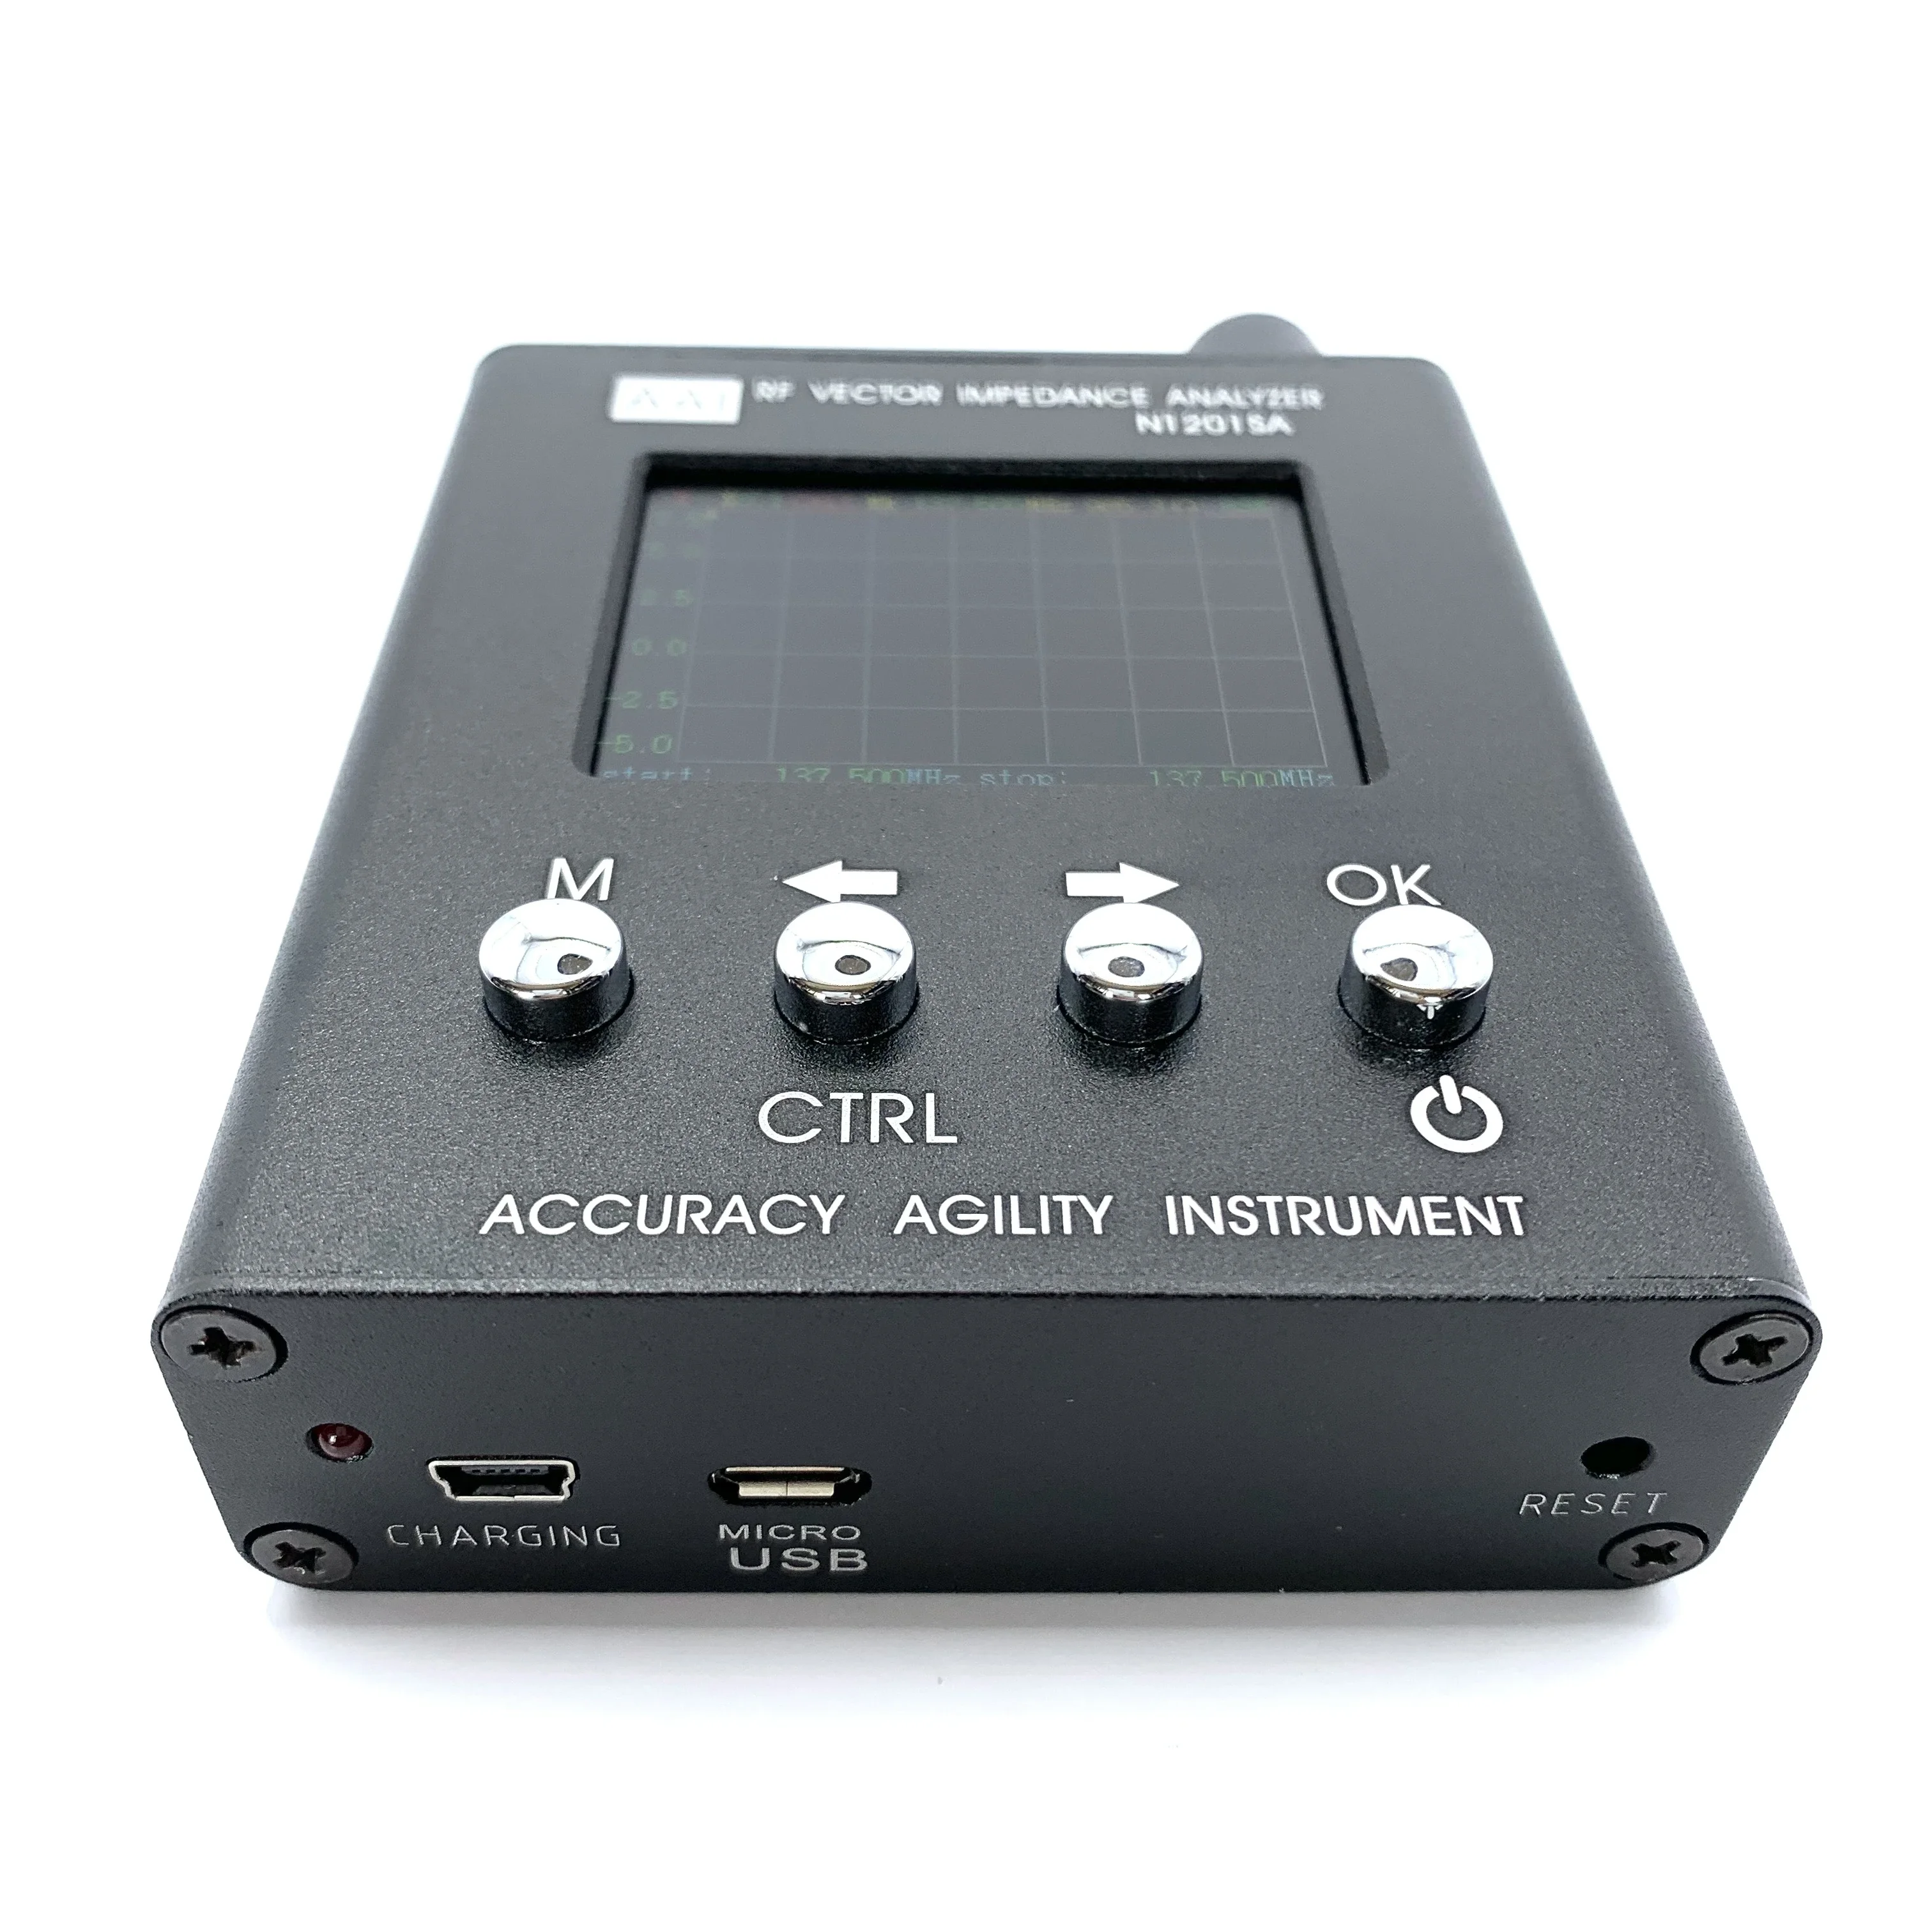 Оригинальный прибор AAI Accuracy Agility N1201SA 140 МГц - 2,7 ГГц УФ ВЧ векторный импеданс ANT SWR Антенный анализатор Тестер измерителя